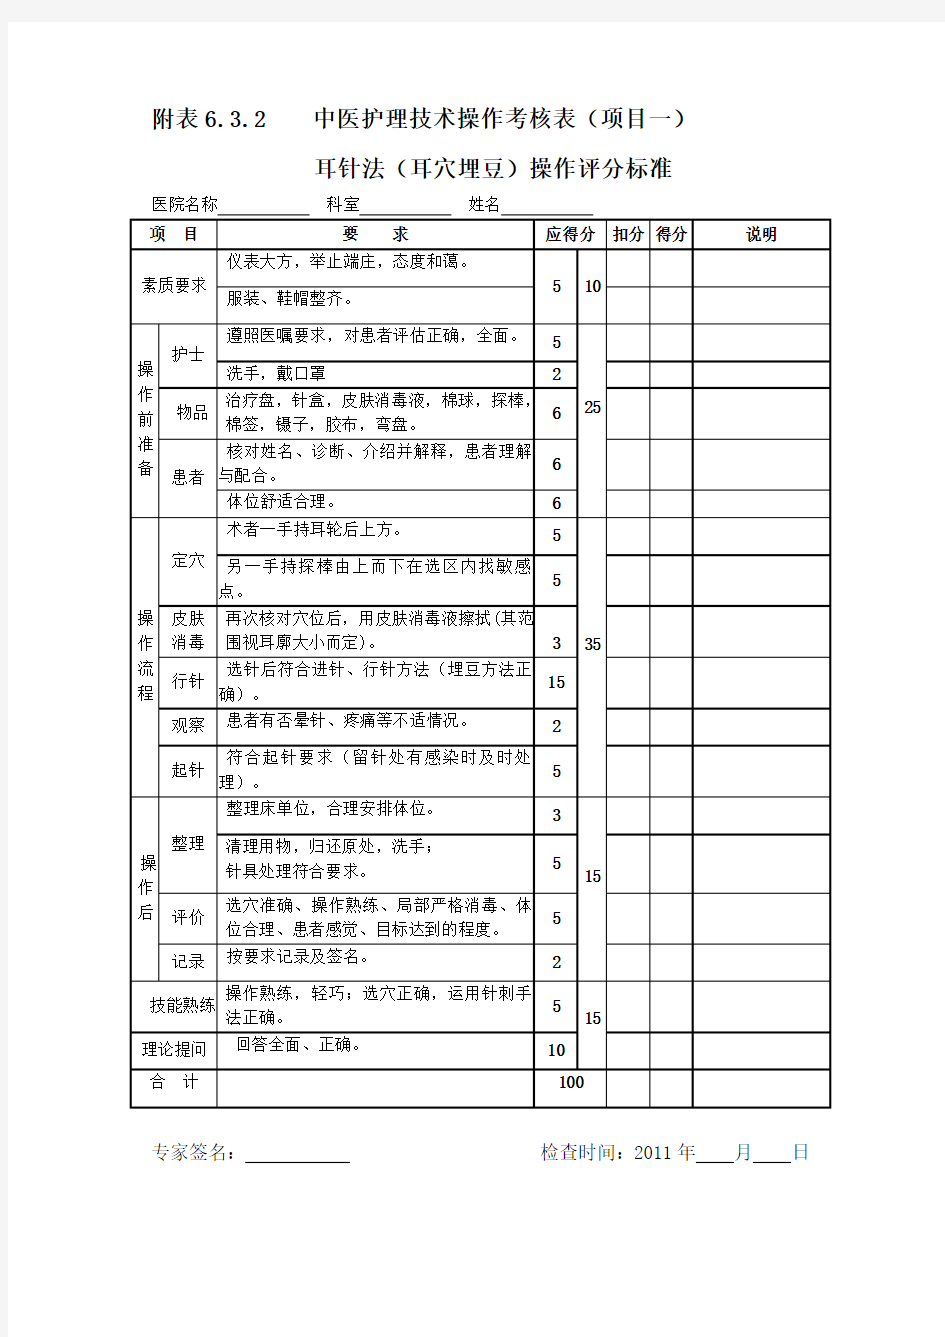 中医护理技术操作考核表(八项)